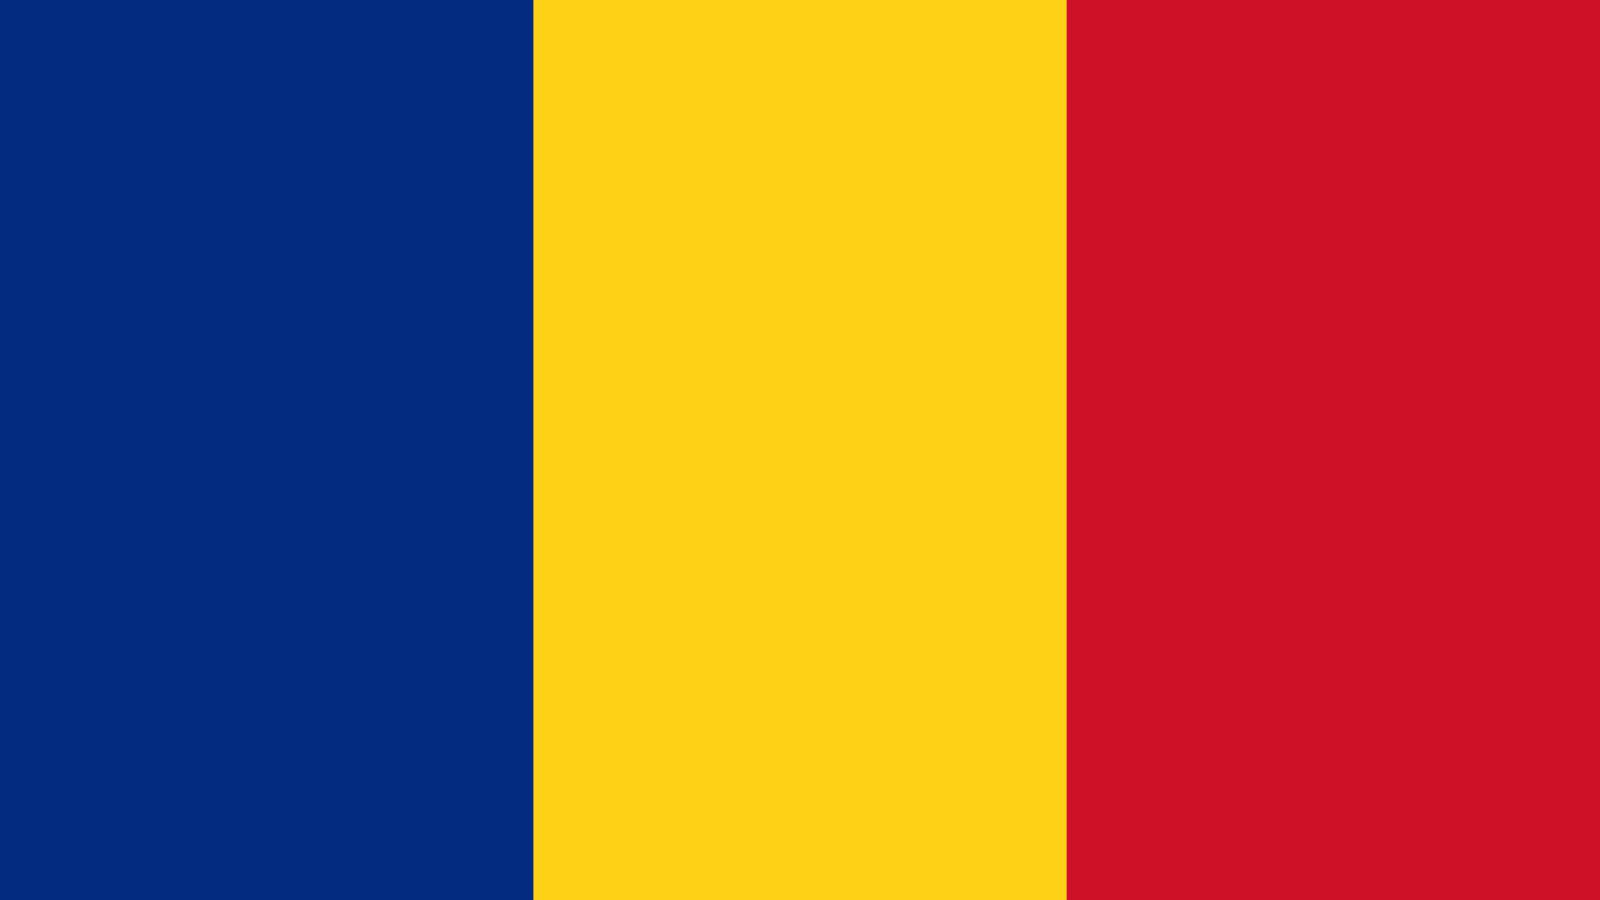 Romanian hallituksen tiedotteet